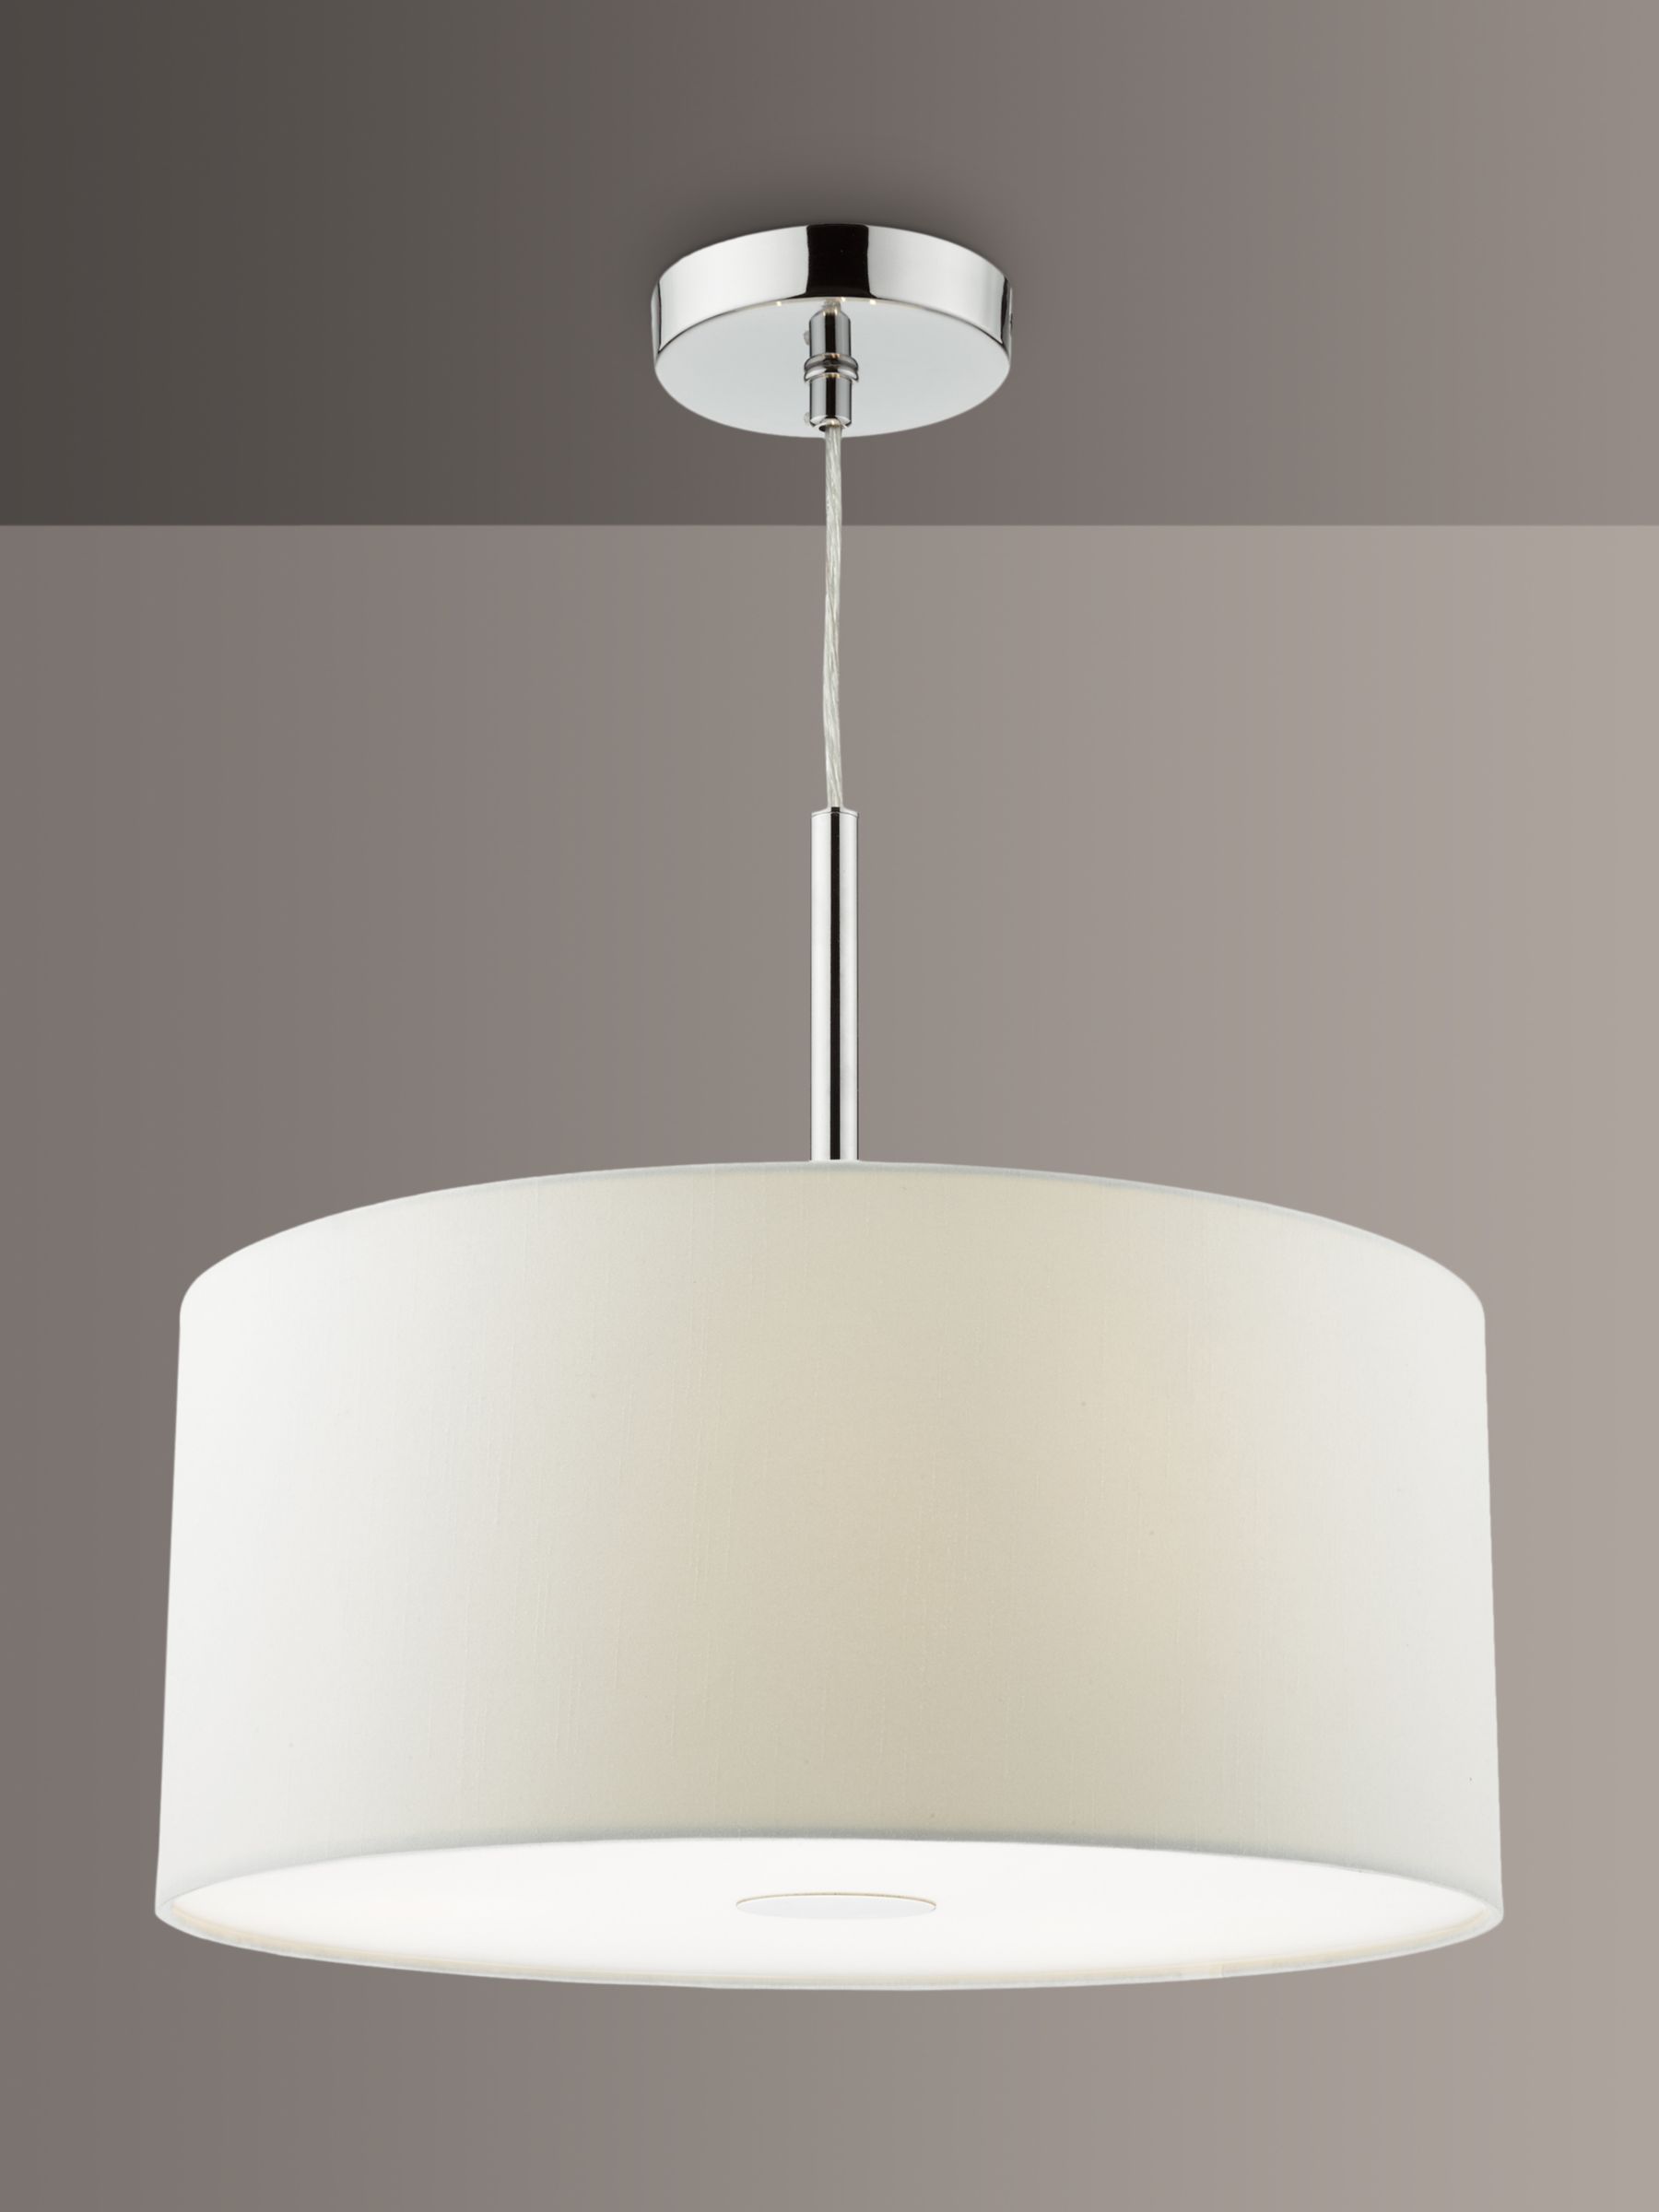 Photo of Där ronda medium pendant ceiling light